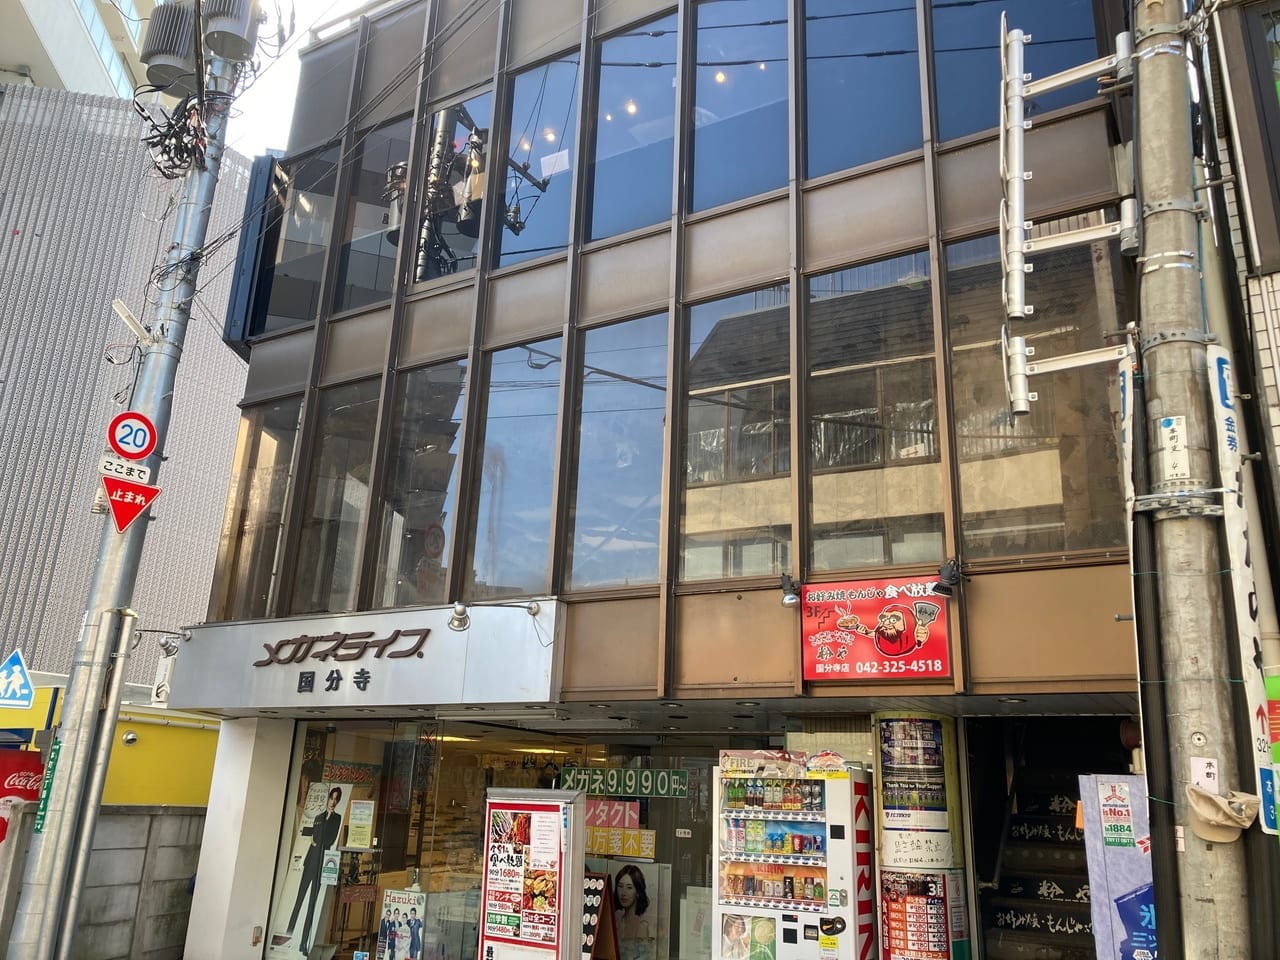 駅からも目立っていた『九州旨いもん処 木村屋本店 国分寺北口』の大きな看板が外れていました。